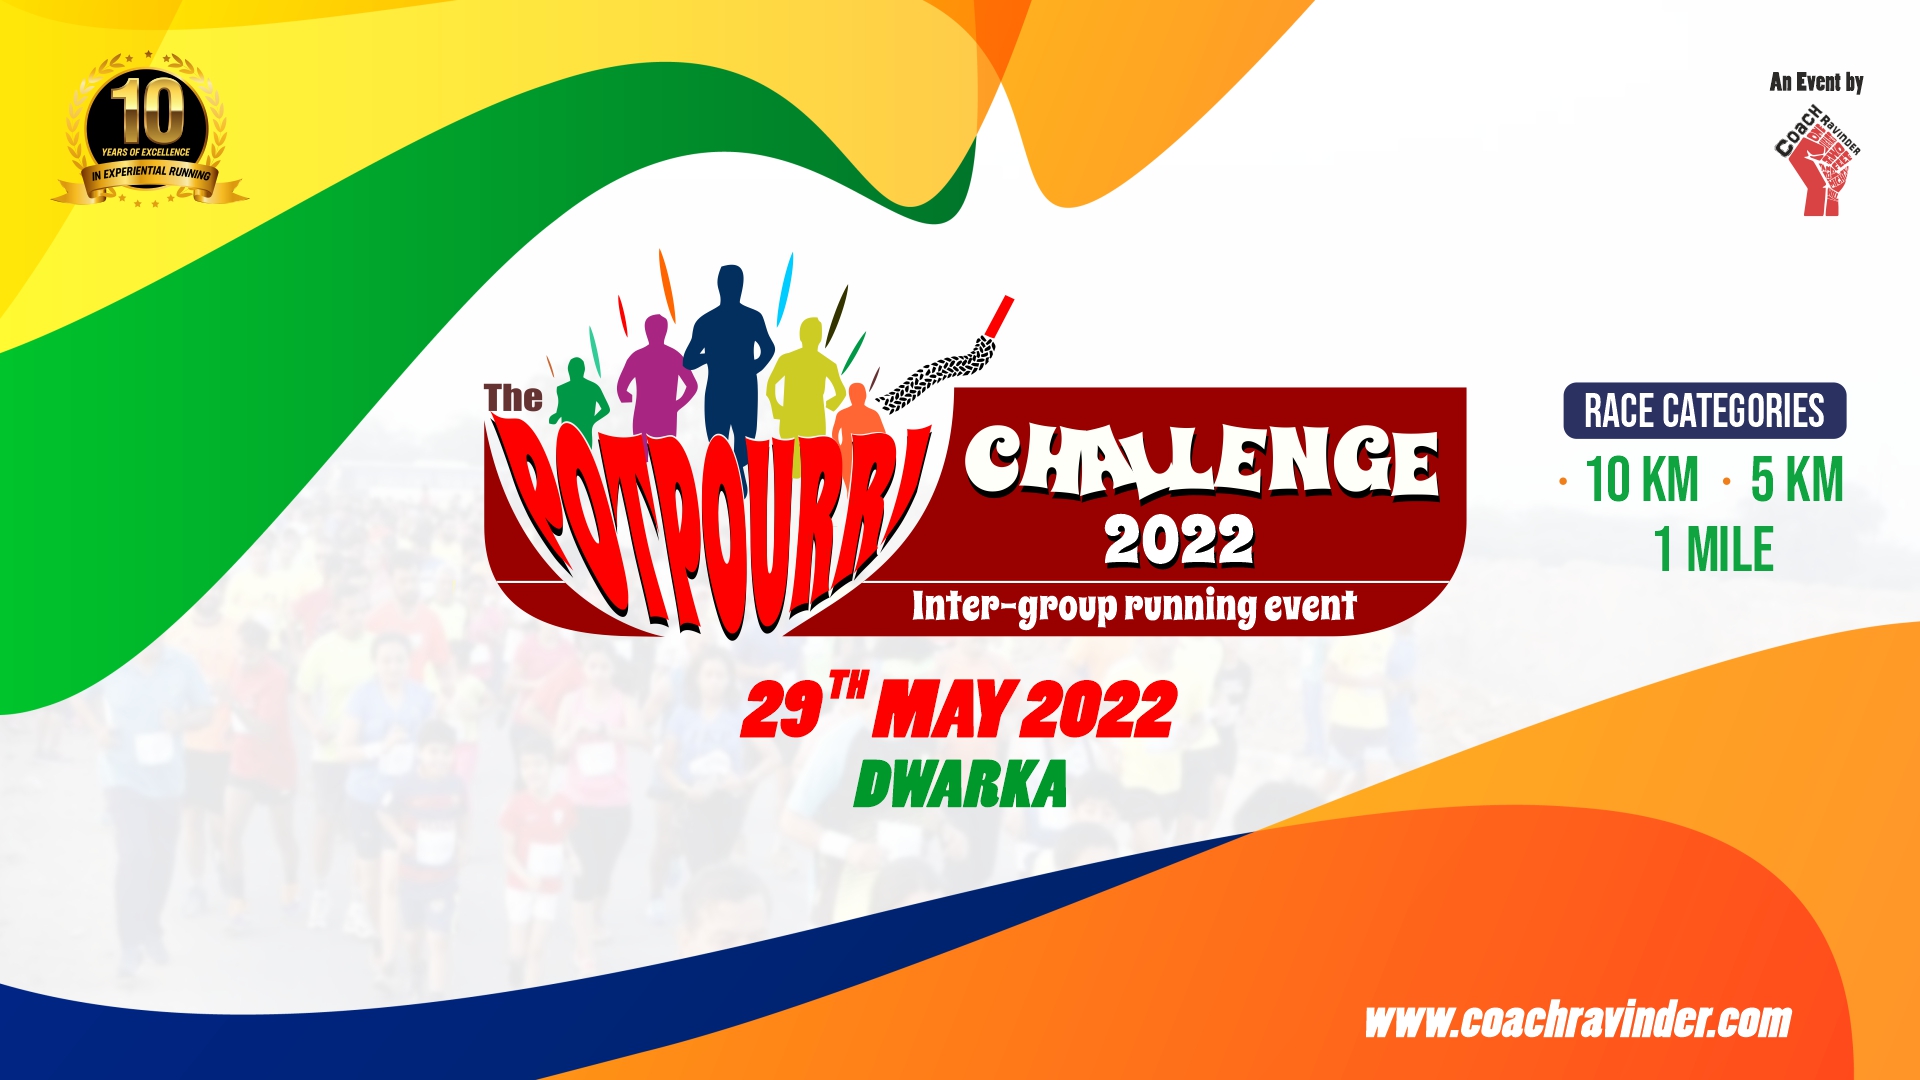 Potpourri Challenge 2022